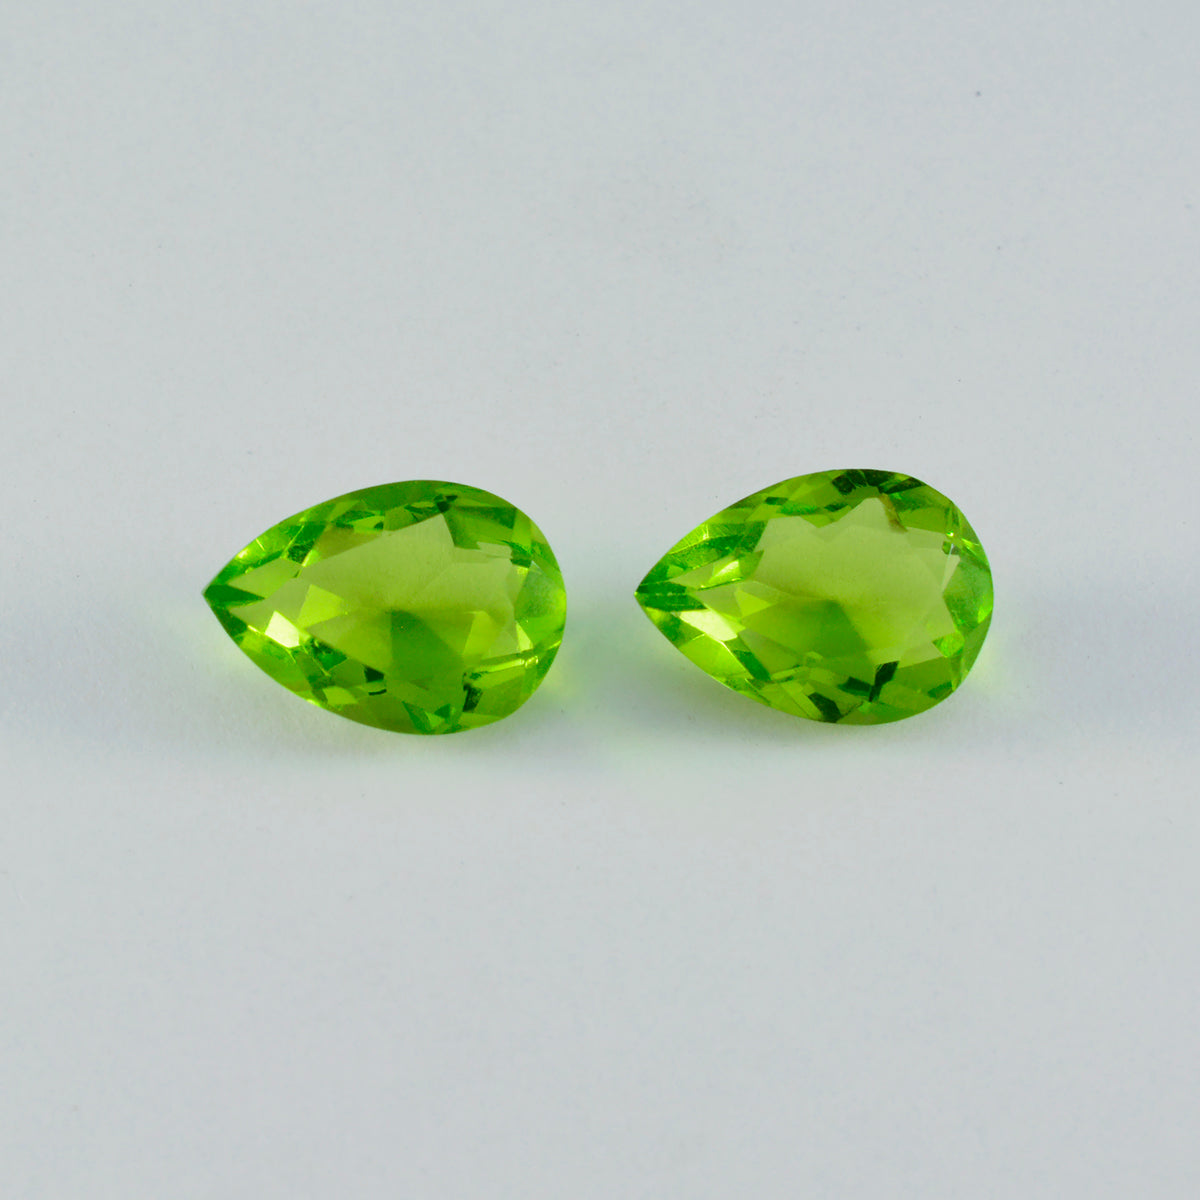 riyogems 1 pieza de peridoto verde cz facetado 10x14 mm forma de pera piedra preciosa de calidad increíble